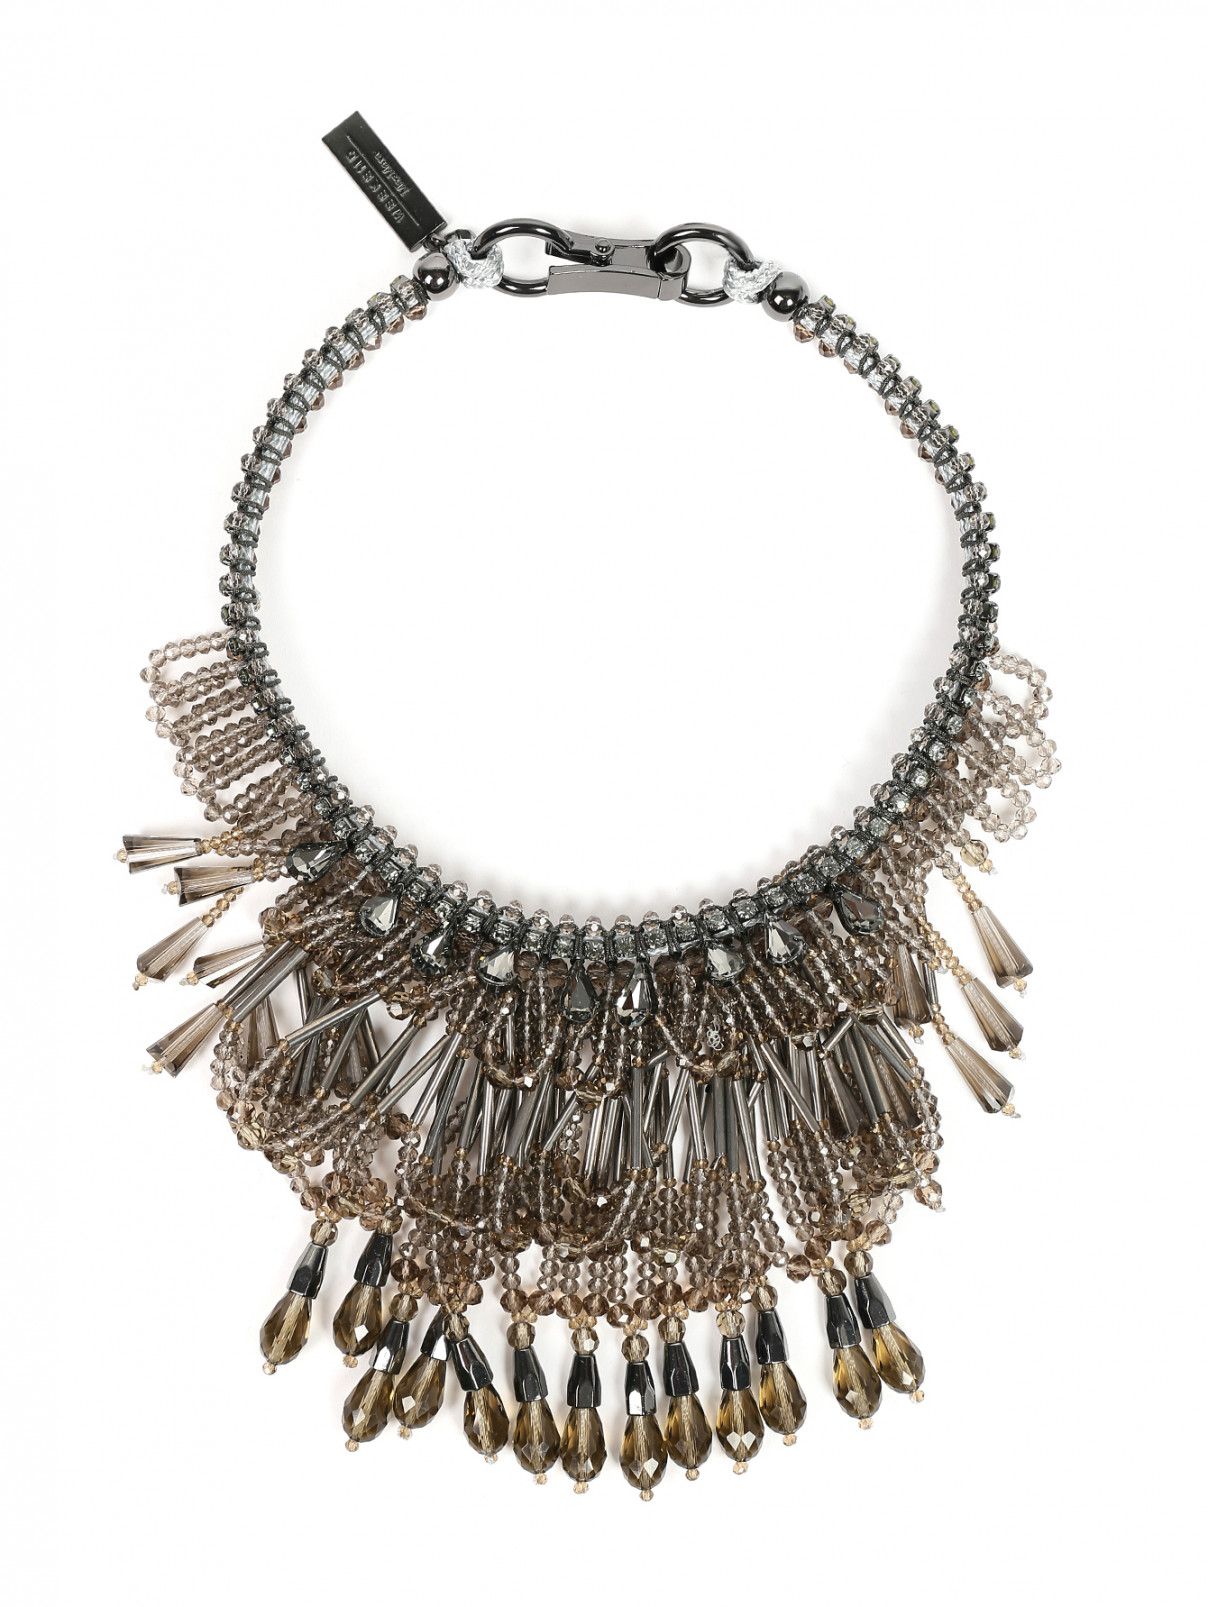 Ожерелье из бусин, декорированное кристаллами Weekend Max Mara  –  Общий вид  – Цвет:  Серый